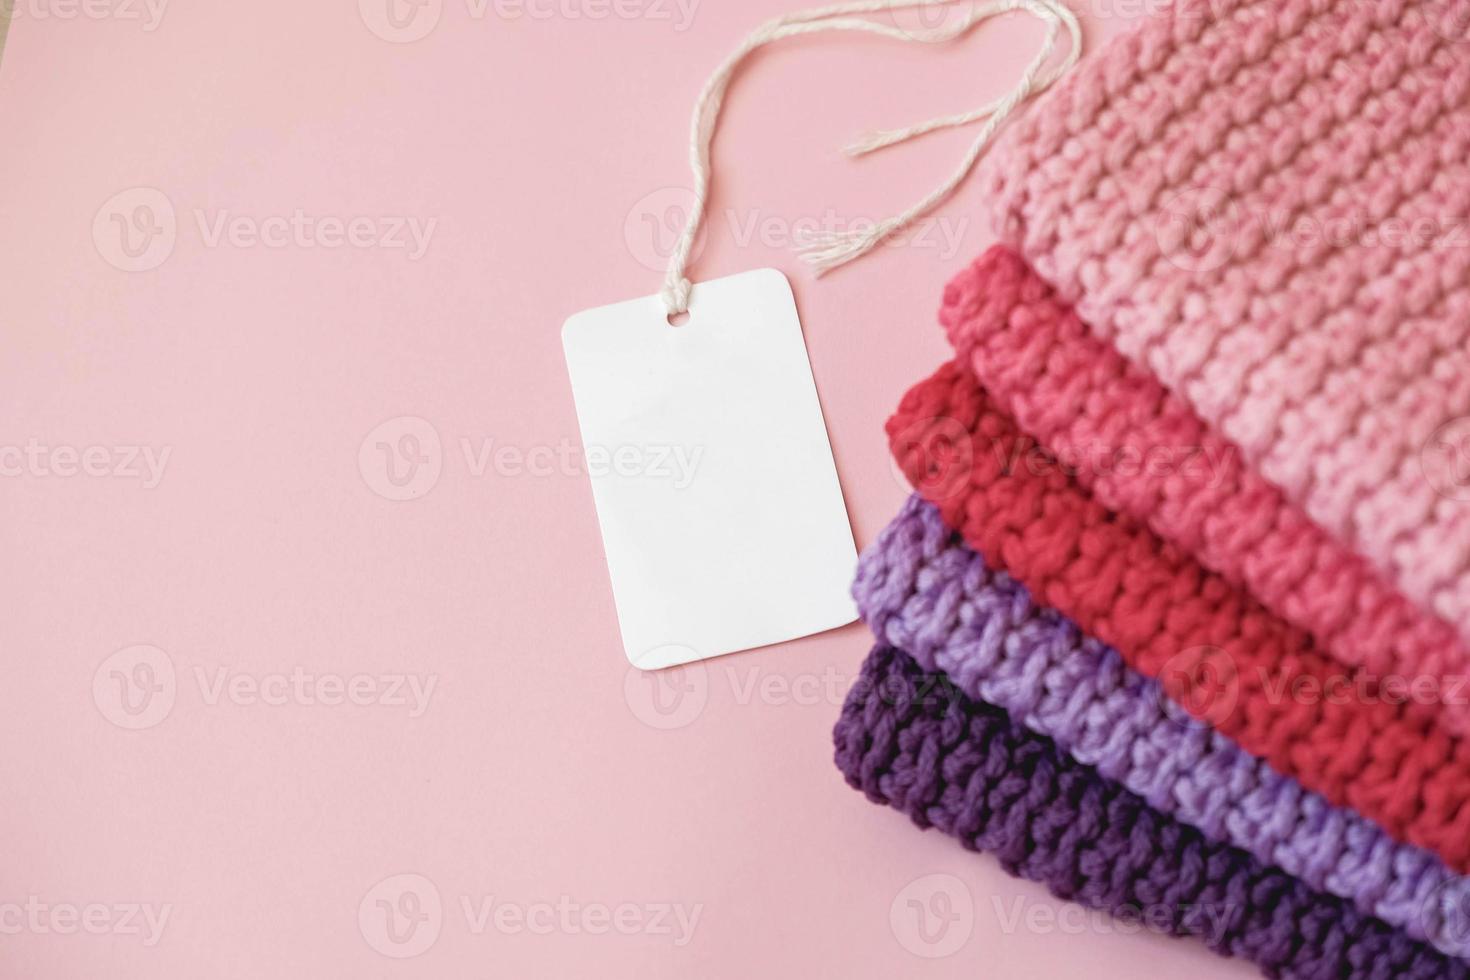 stapel gebreid materiaal van draden van roze, rode, paarse kleuren met een leeg prijskaartje op een roze achtergrond. bovenaanzicht. kopiëren, lege ruimte voor tekst foto